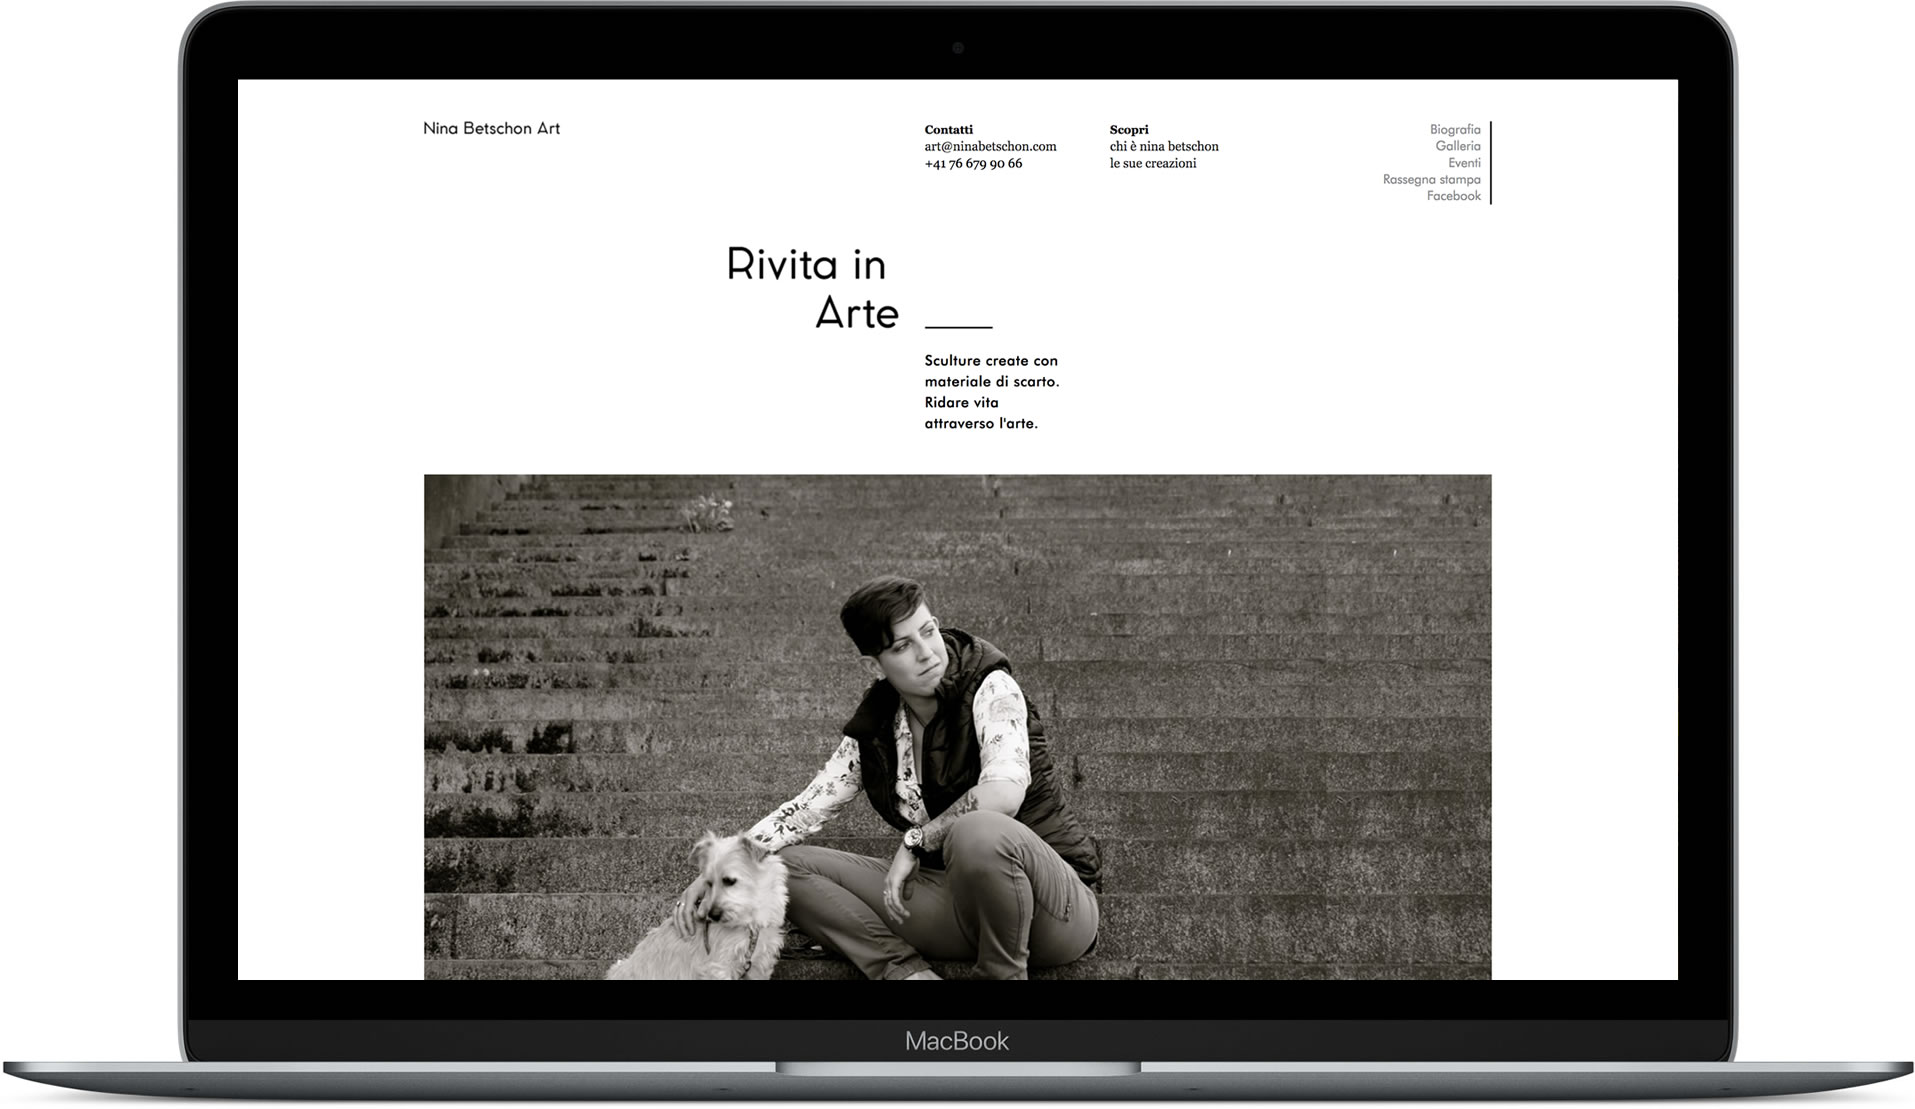 Website designed for Nina Betschon mocked up in MacBook